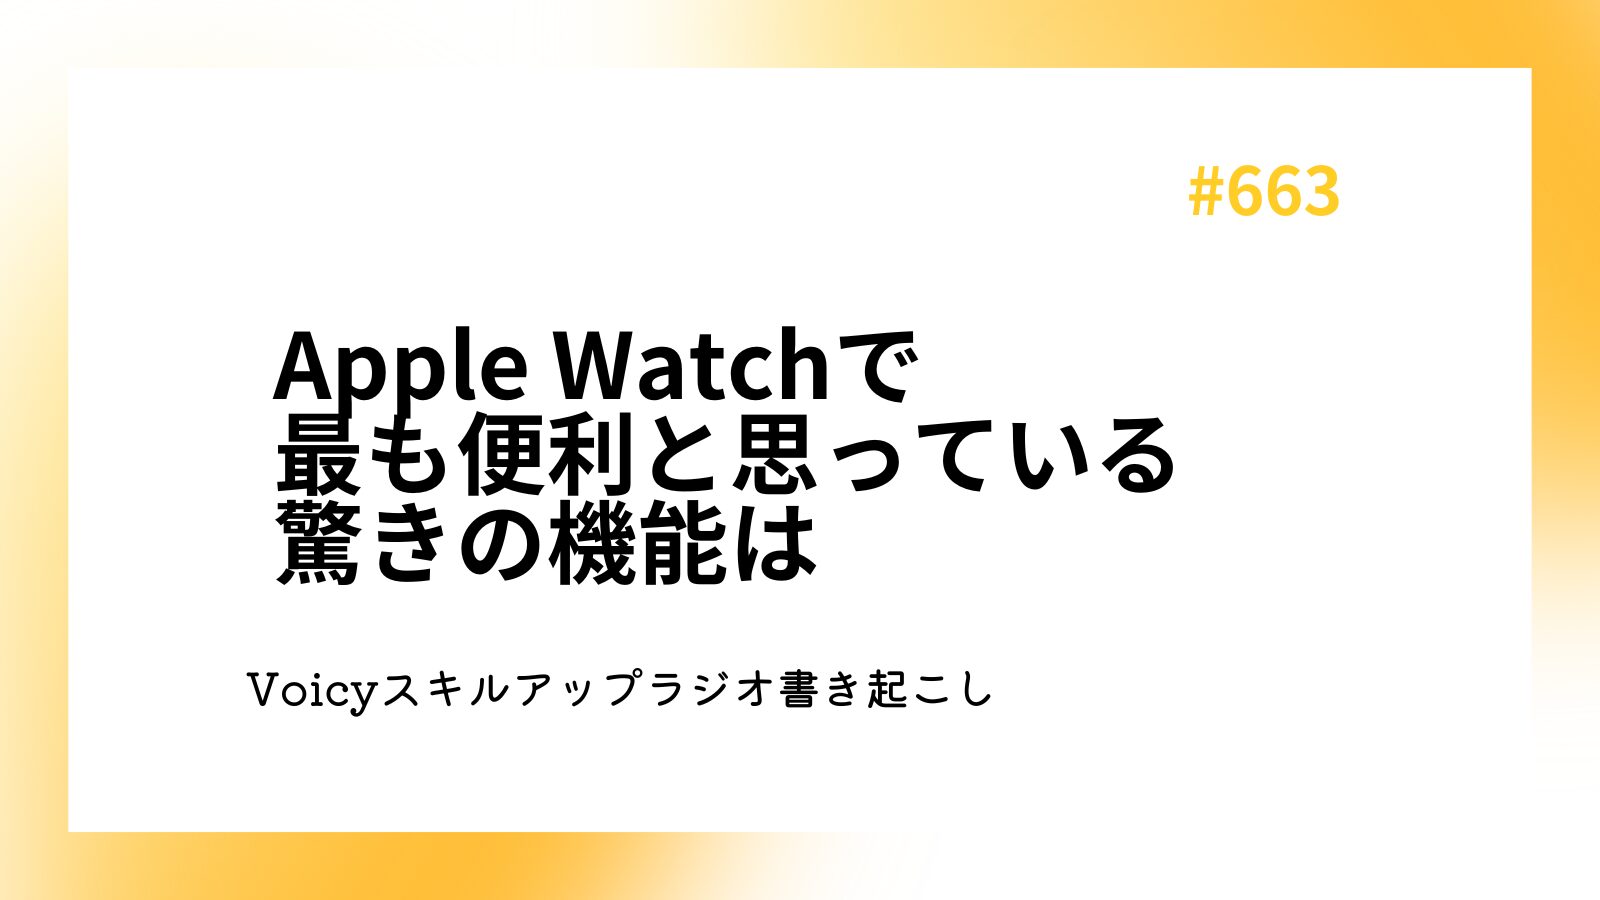 Apple Watchで最も便利と思っている驚きの機能は